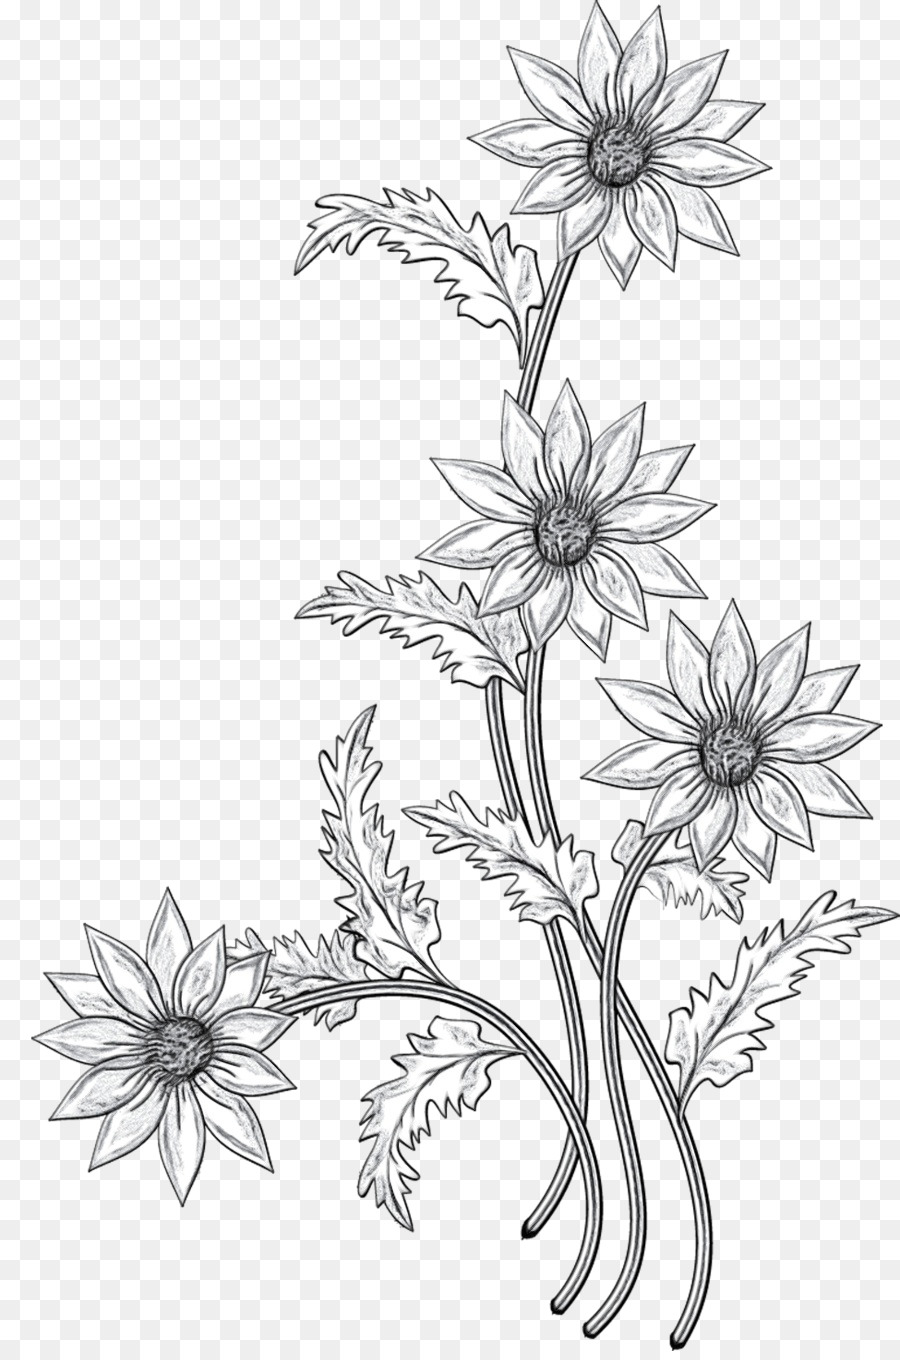 Floral design Cut flowers Black & White - M Sketch -  png download - 900*1351 - Free Transparent Floral Design png Download.